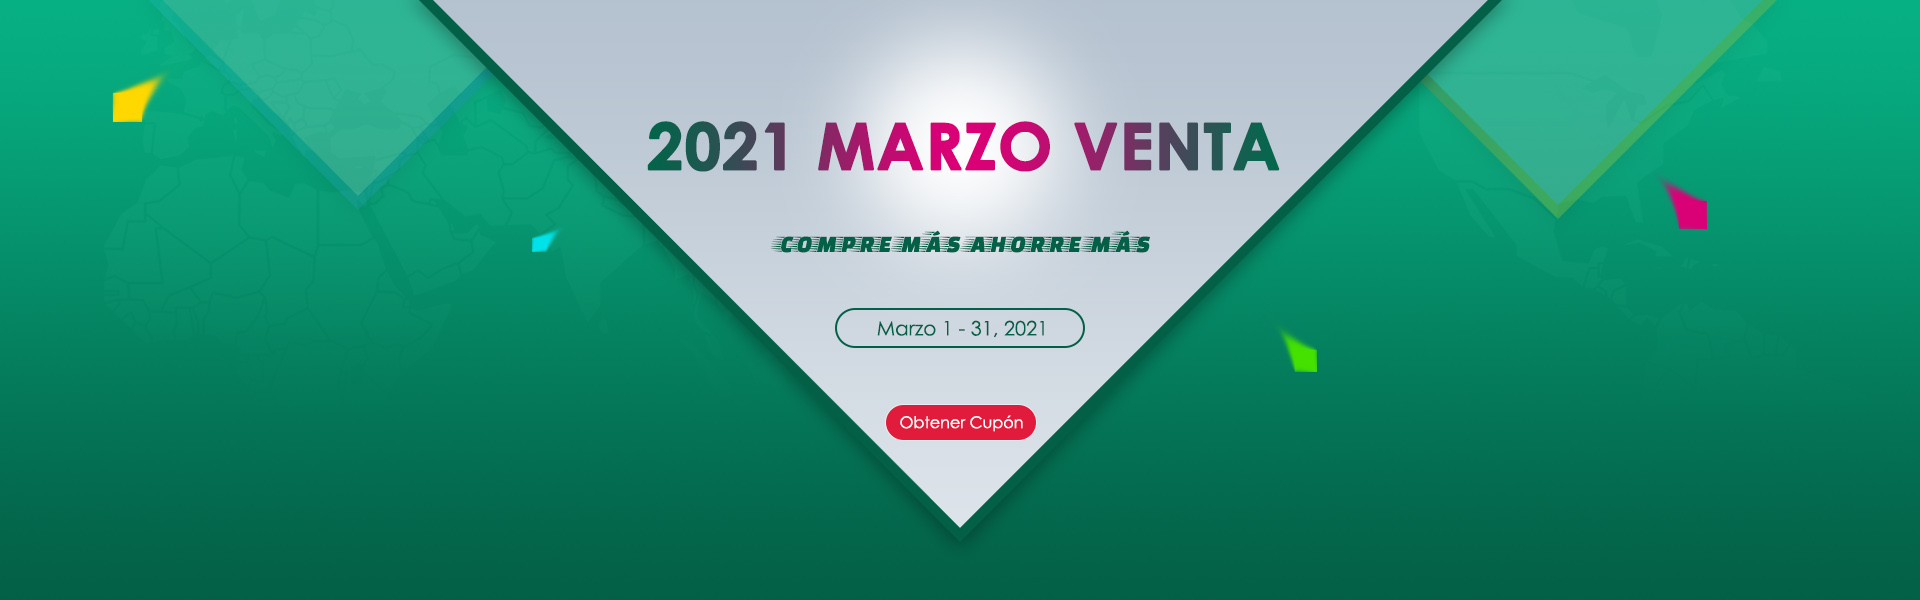 2021 MARZO VENTA